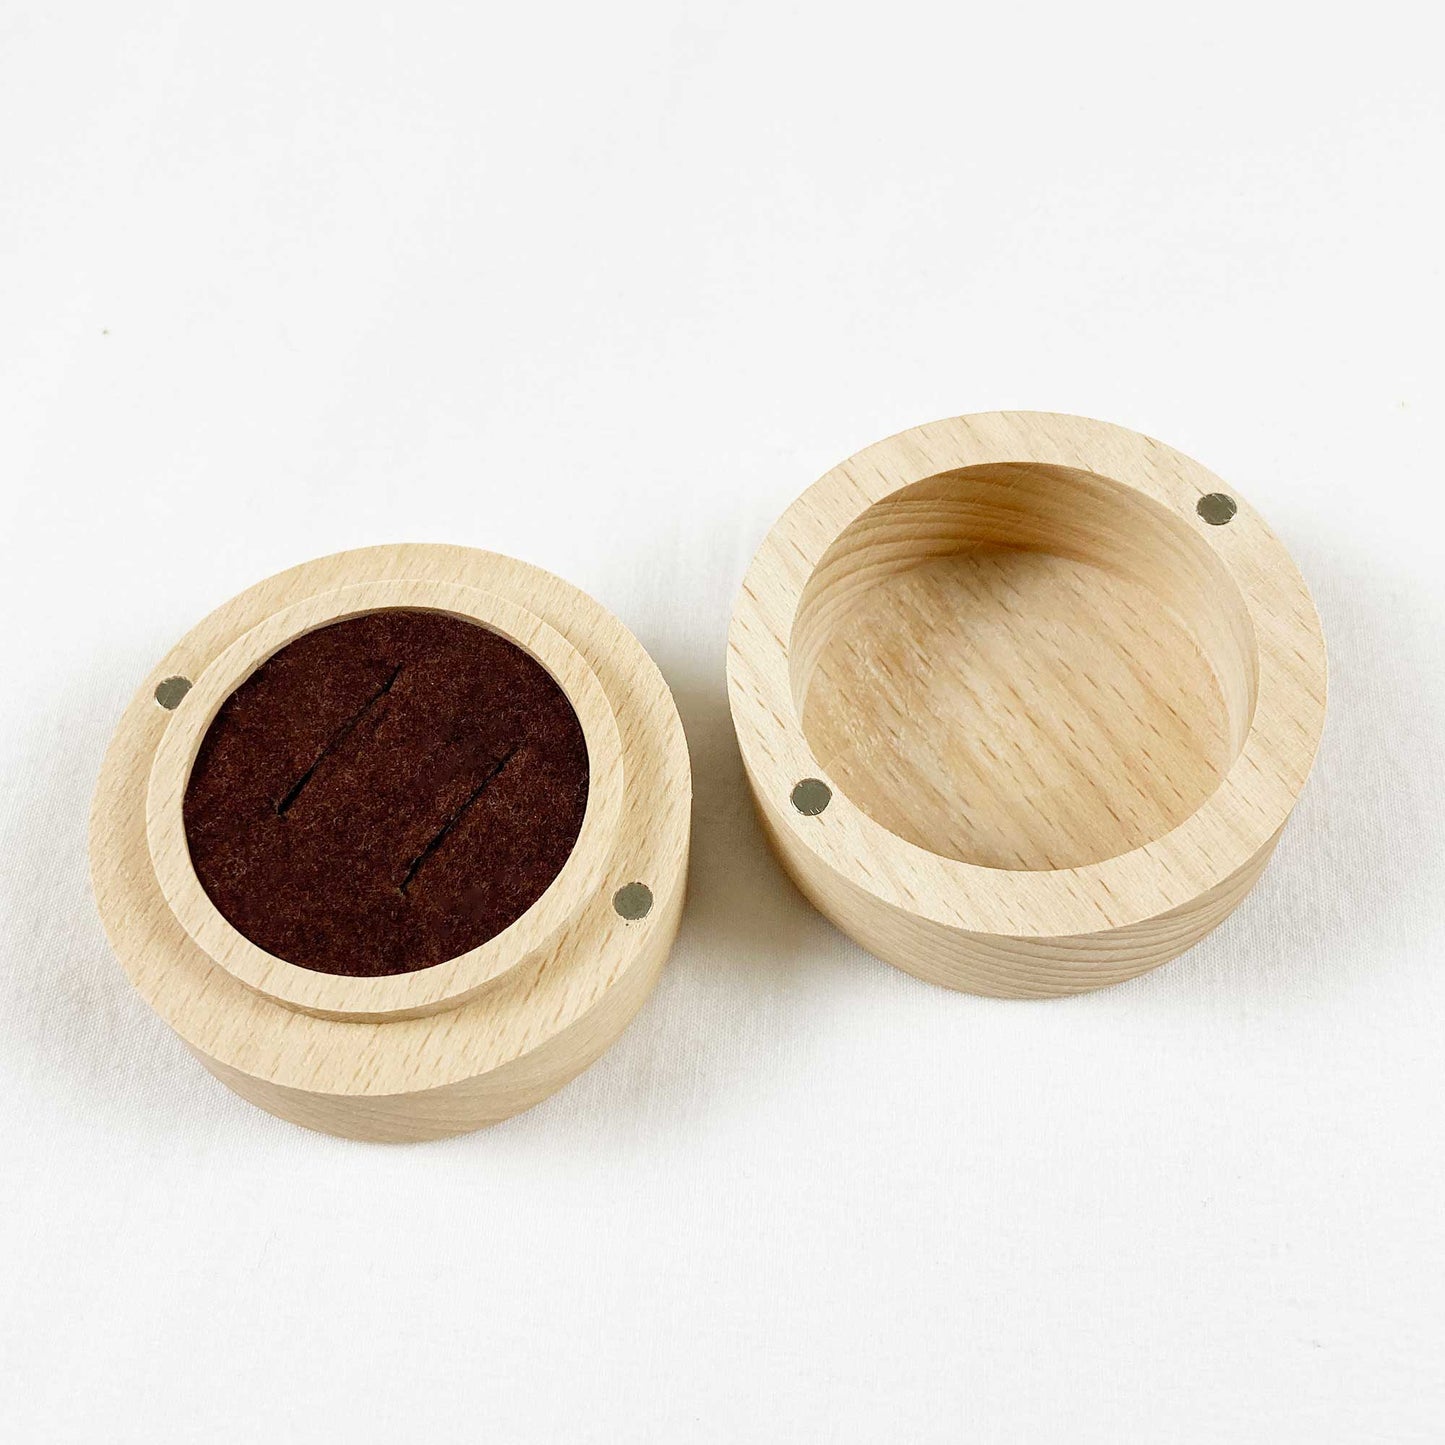 Round Wooden Engraved Mr. & Mrs. Forever Always Ring Holder Gift Box